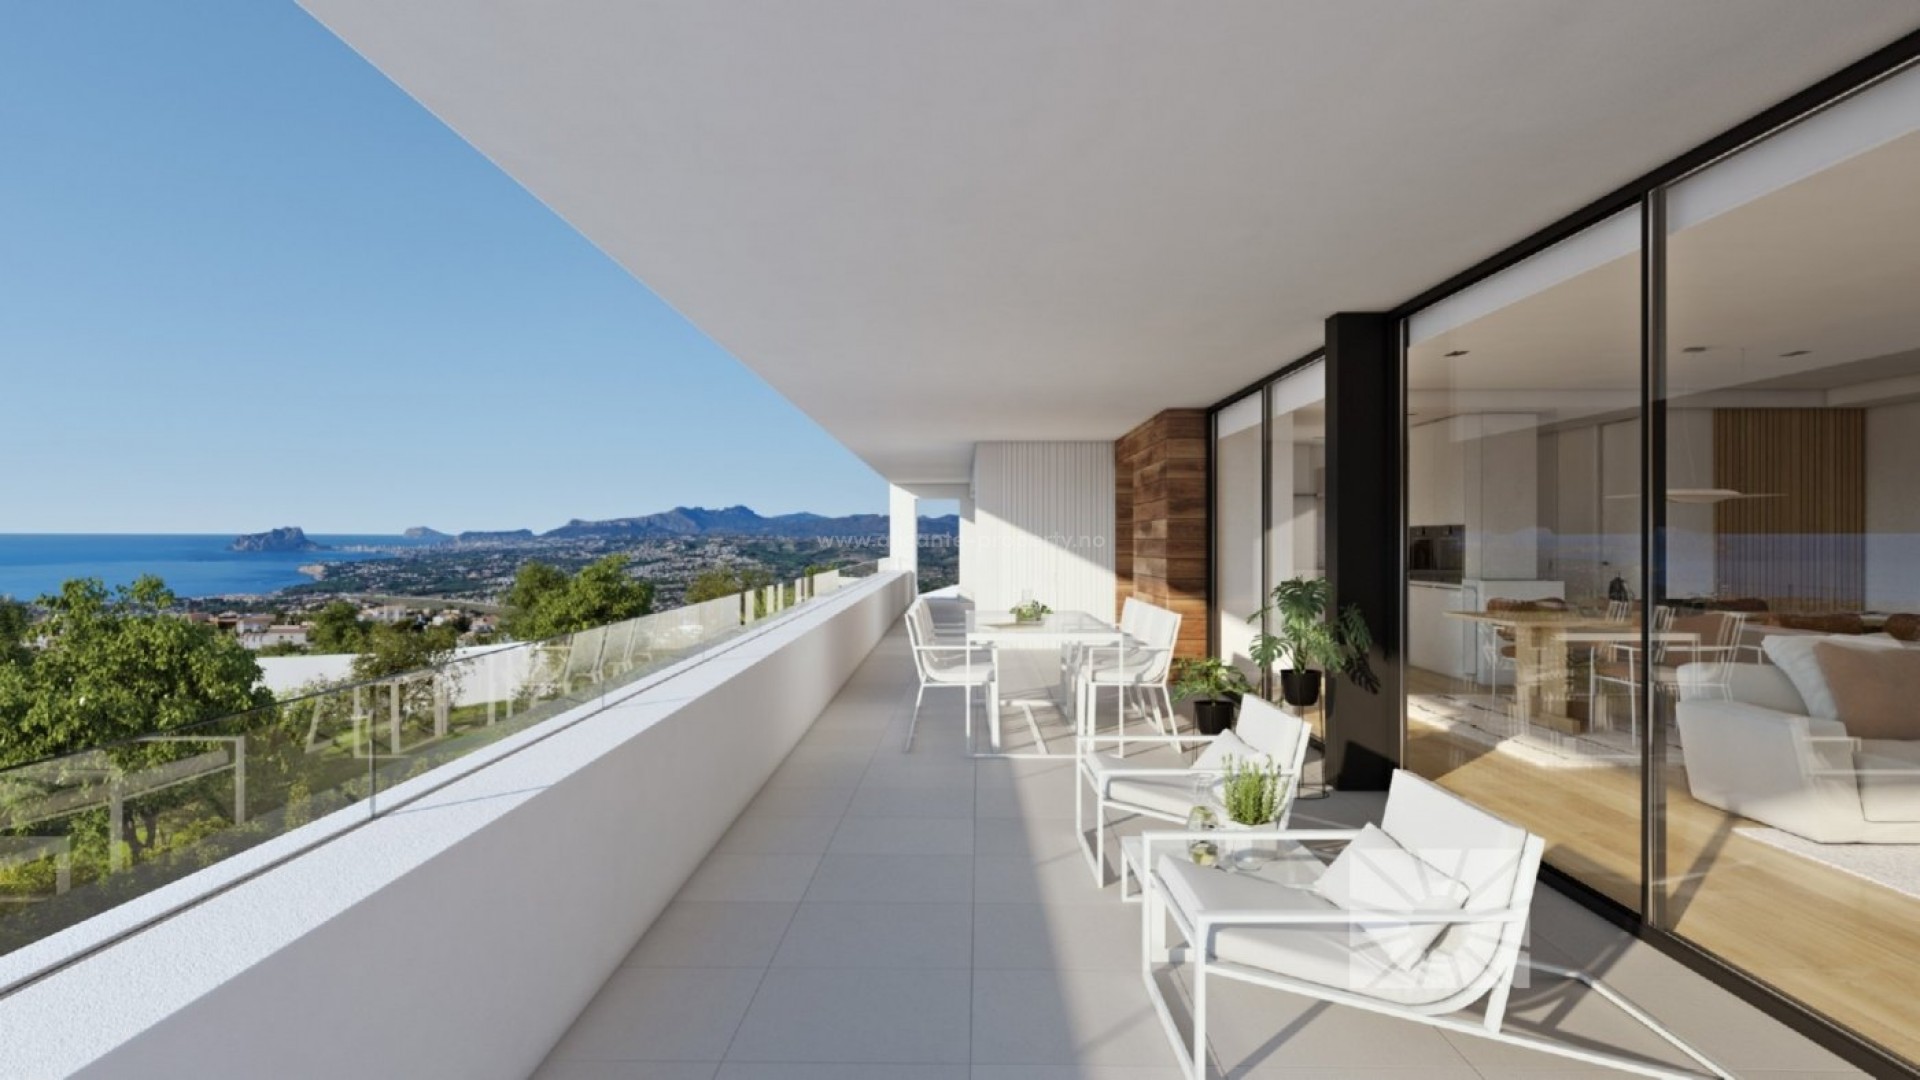 Luksus-villa til salgs i Cumbres del Sol, Benitachell, 3 soverom, 4 bad, terrasse med svømmebasseng og havutsikt, hageområde og dobbel garasje